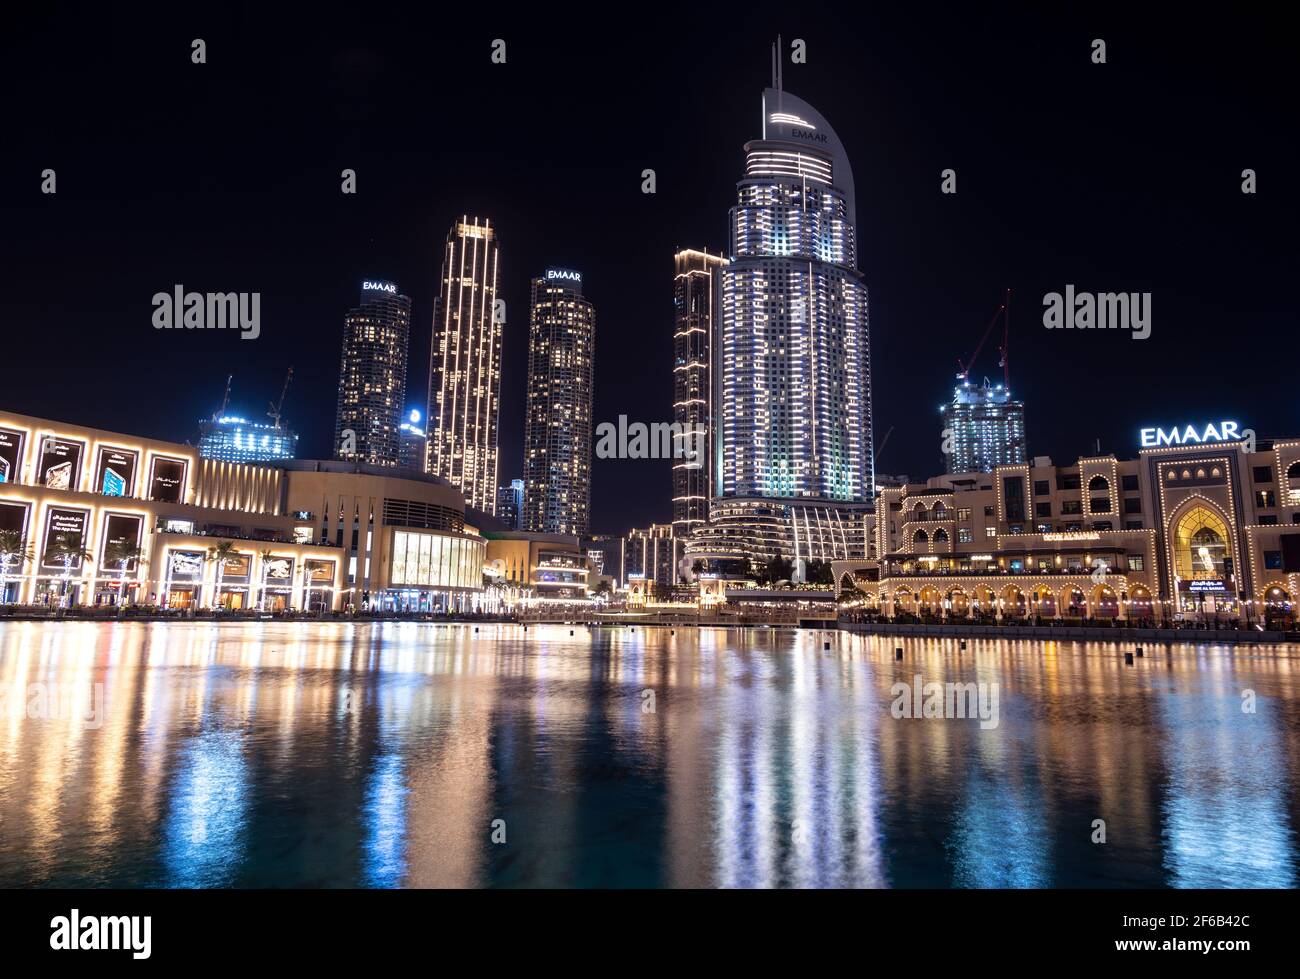 7 GENNAIO 2021, Dubai, Emirati Arabi Uniti . Splendida vista del souk illuminato al bahar, del centro commerciale di dubai, dell'hotel address e di altri edifici catturati al Dubai Mall Foto Stock